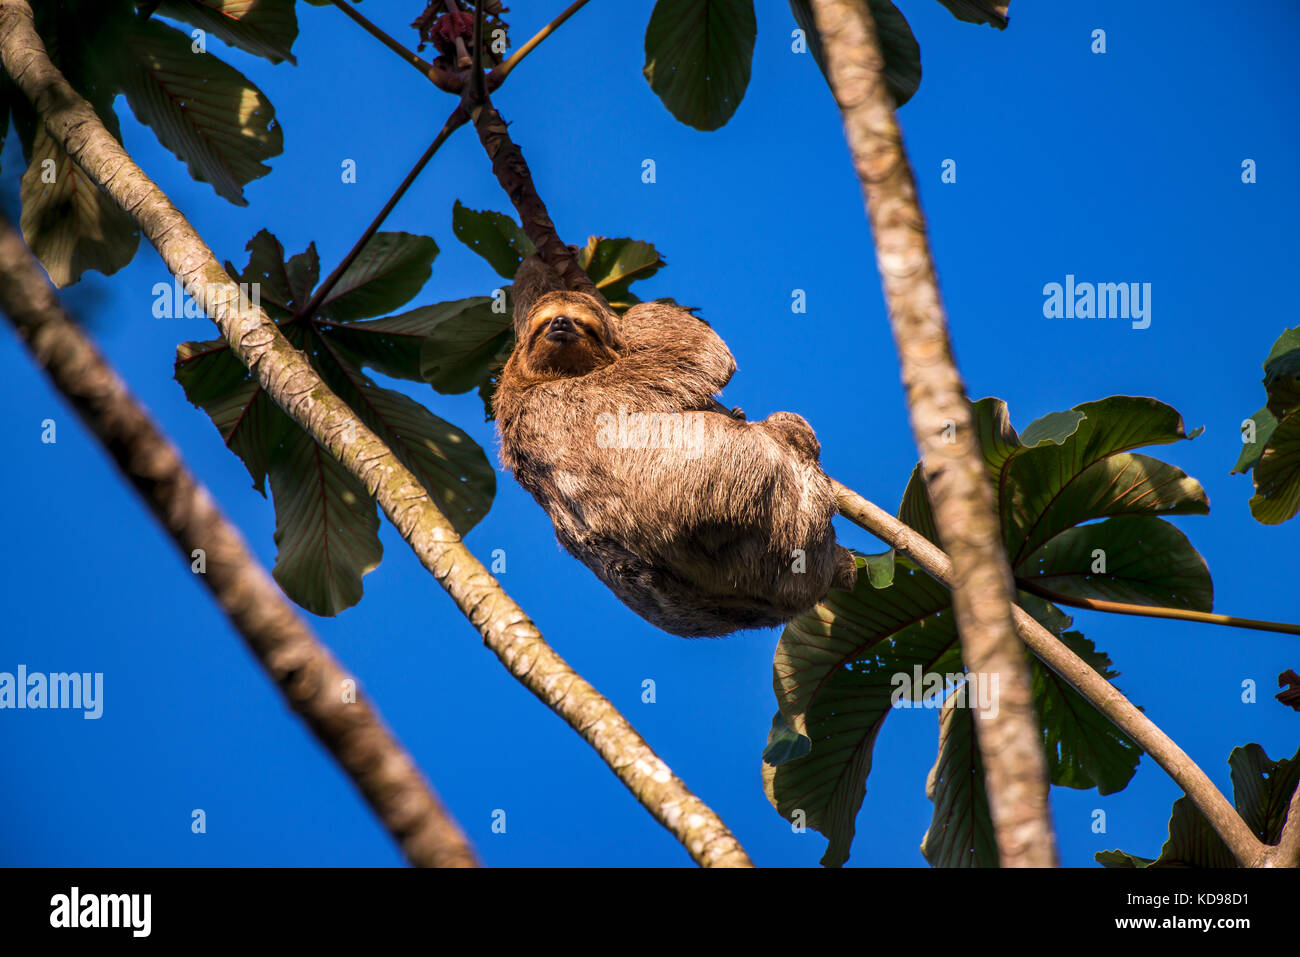 'Preguiça-comum (Bradypus variegatus) fotografado em Linhares, Espírito Santo -  Sudeste do Brasil. Bioma Mata Atlântica. Registro feito em 2013.      Stock Photo